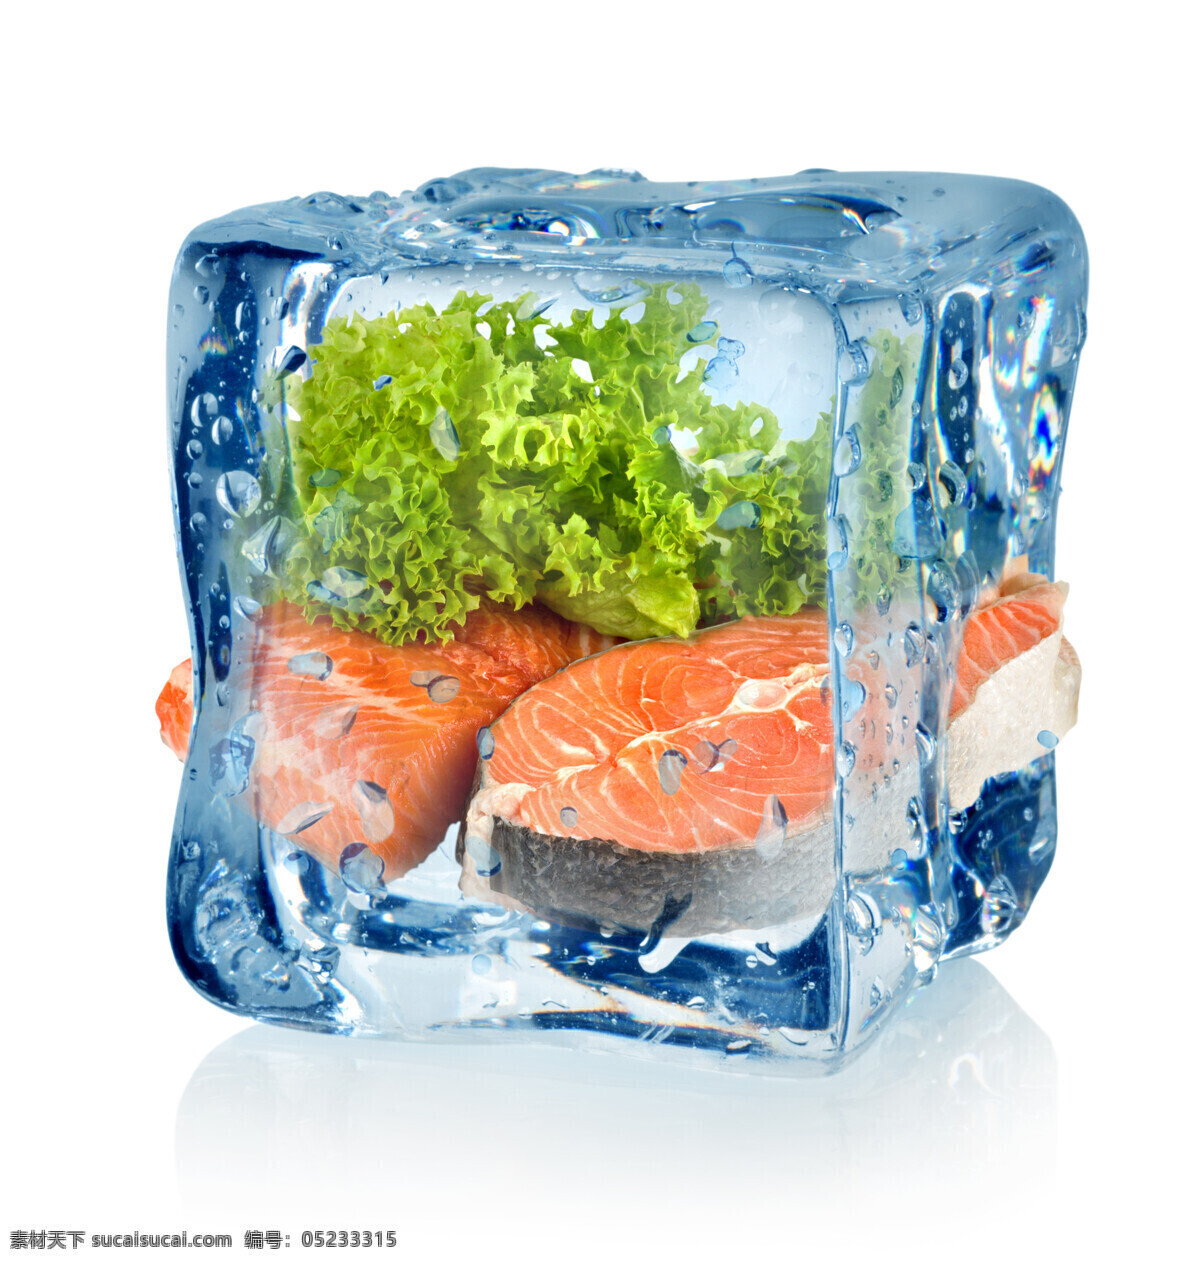 三文鱼 冰冻 冷藏 冰块 蔬菜 冰冻的三文鱼 鱼肉 肉类保鲜 肉类冷藏 冰冻的肉类 新鲜肉类 鲜肉 蔬菜图片 餐饮美食